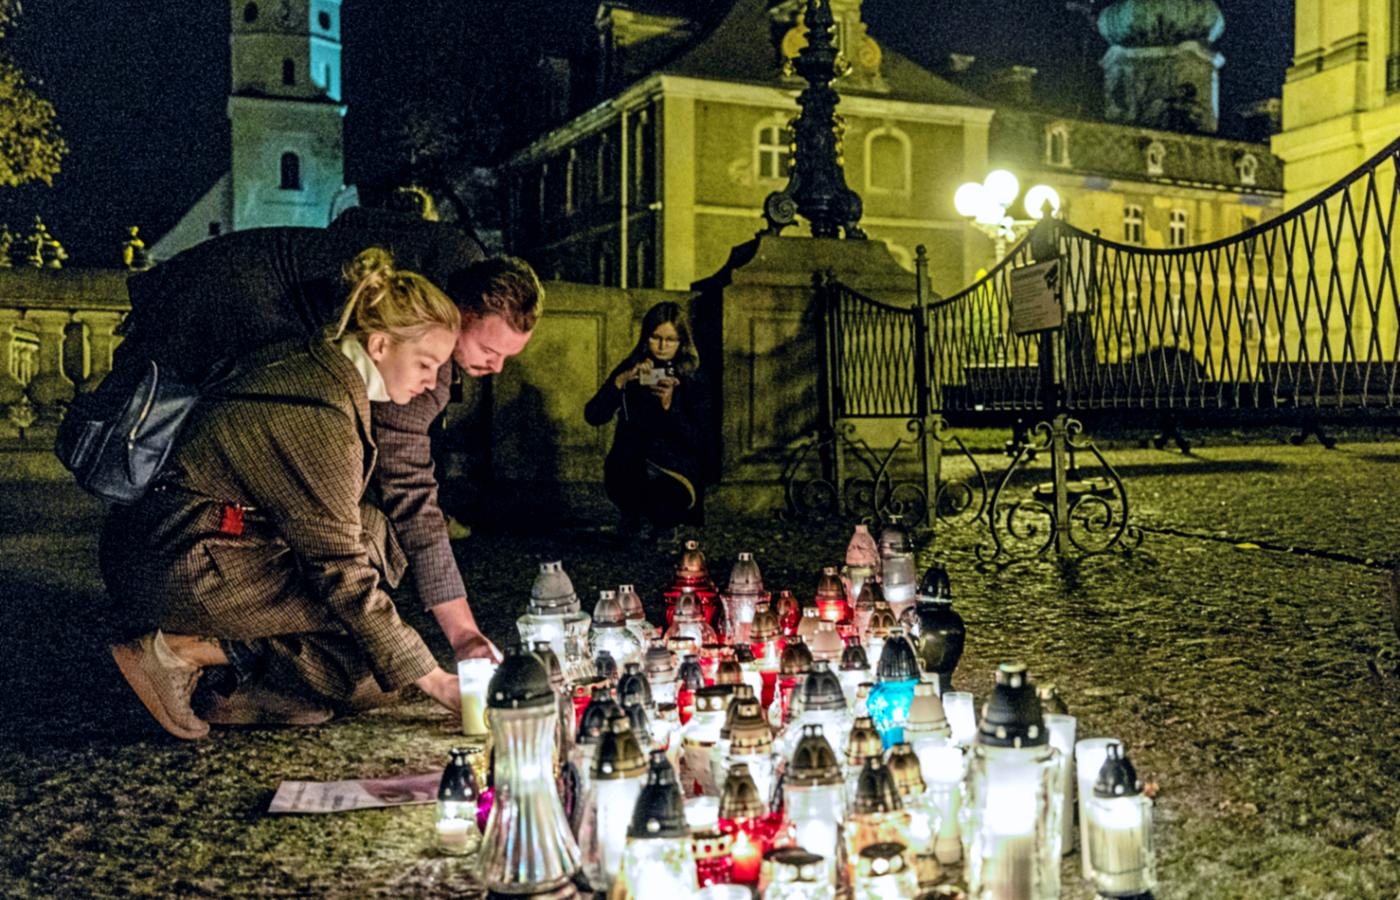 Mała spontaniczna manifestacja po śmierci Izabeli. Pszczyna, 1 listopada 2021 r.